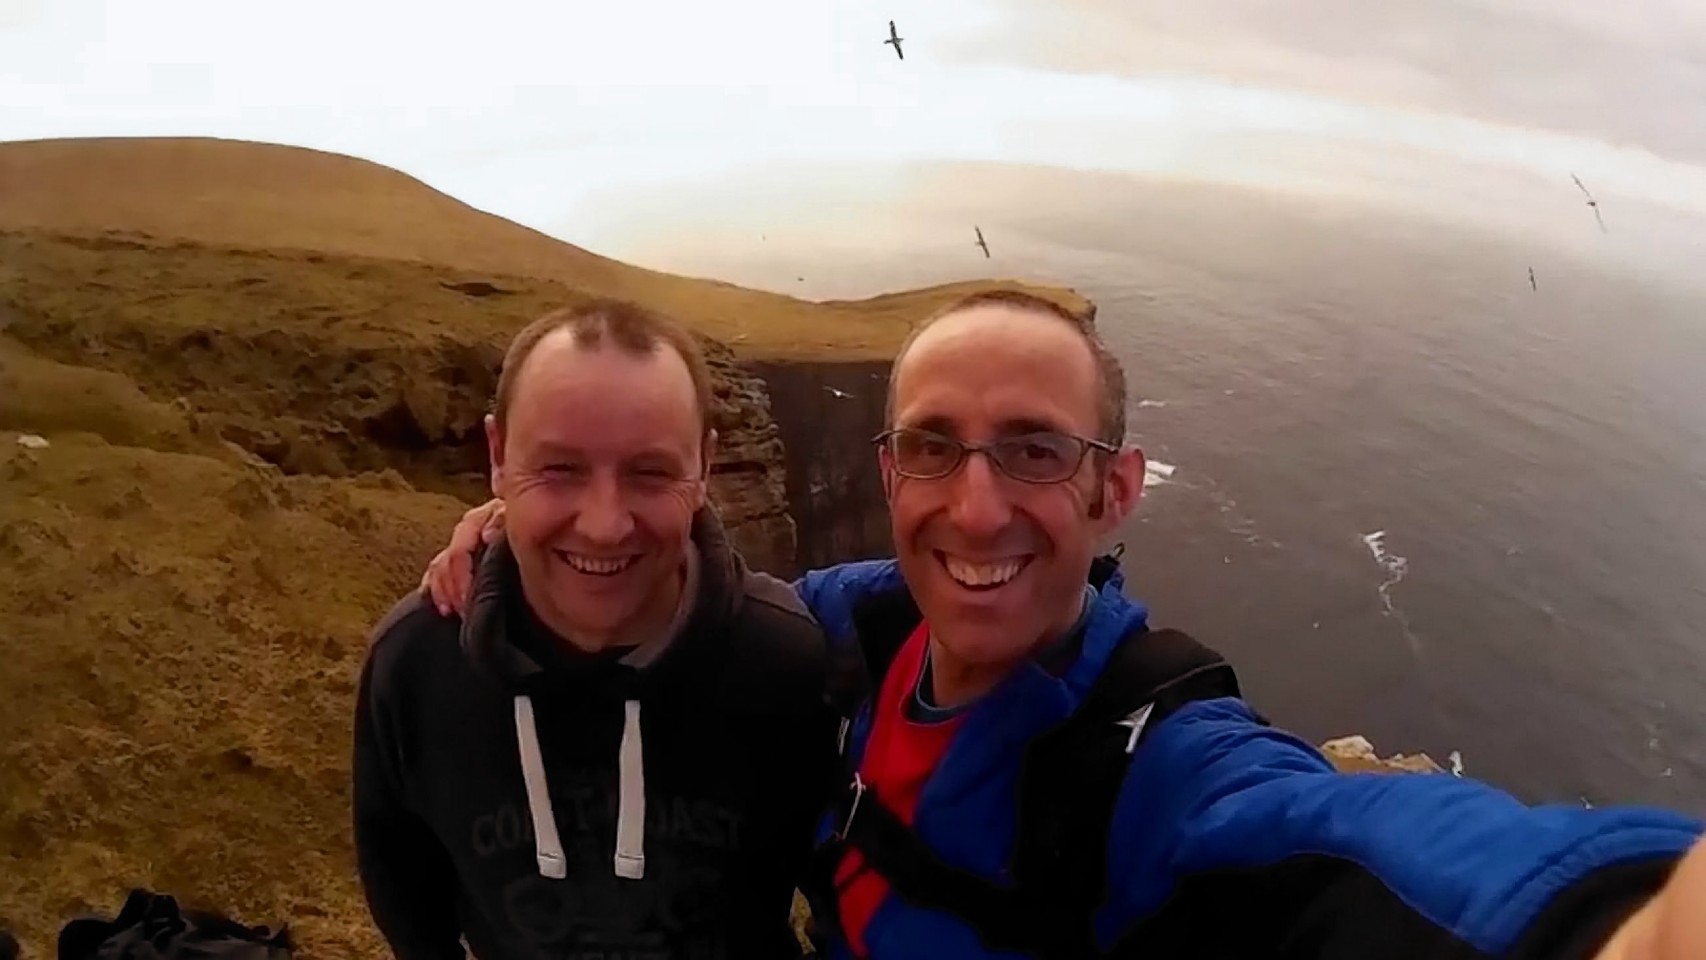 Darren Strafford and Simon Brentford filmed the jump before uploading to YouTube